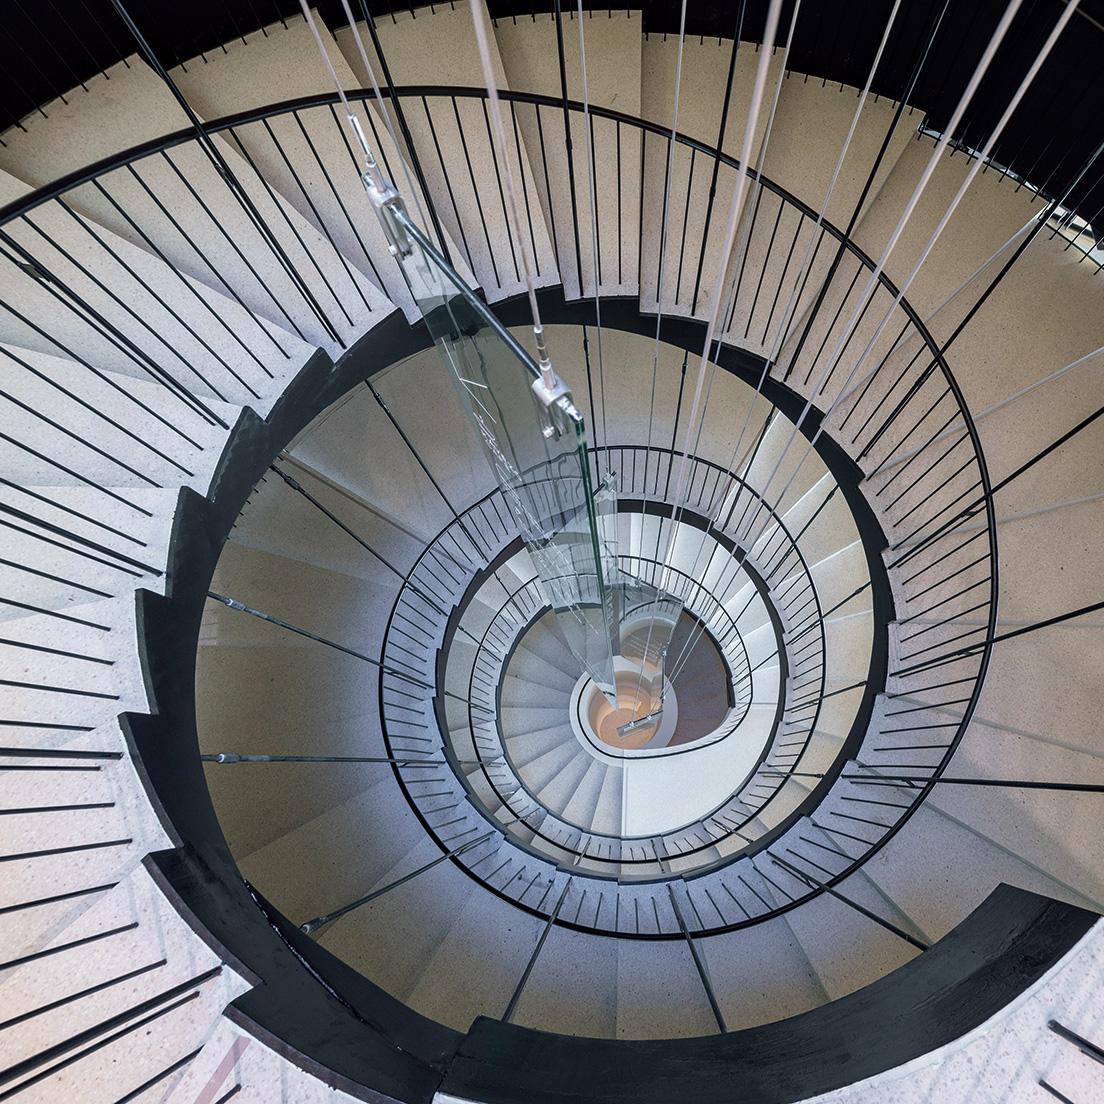 螺旋階段は上にある光井戸を中心に渦巻いており、自然光を低層階へ取り込むつくりに。